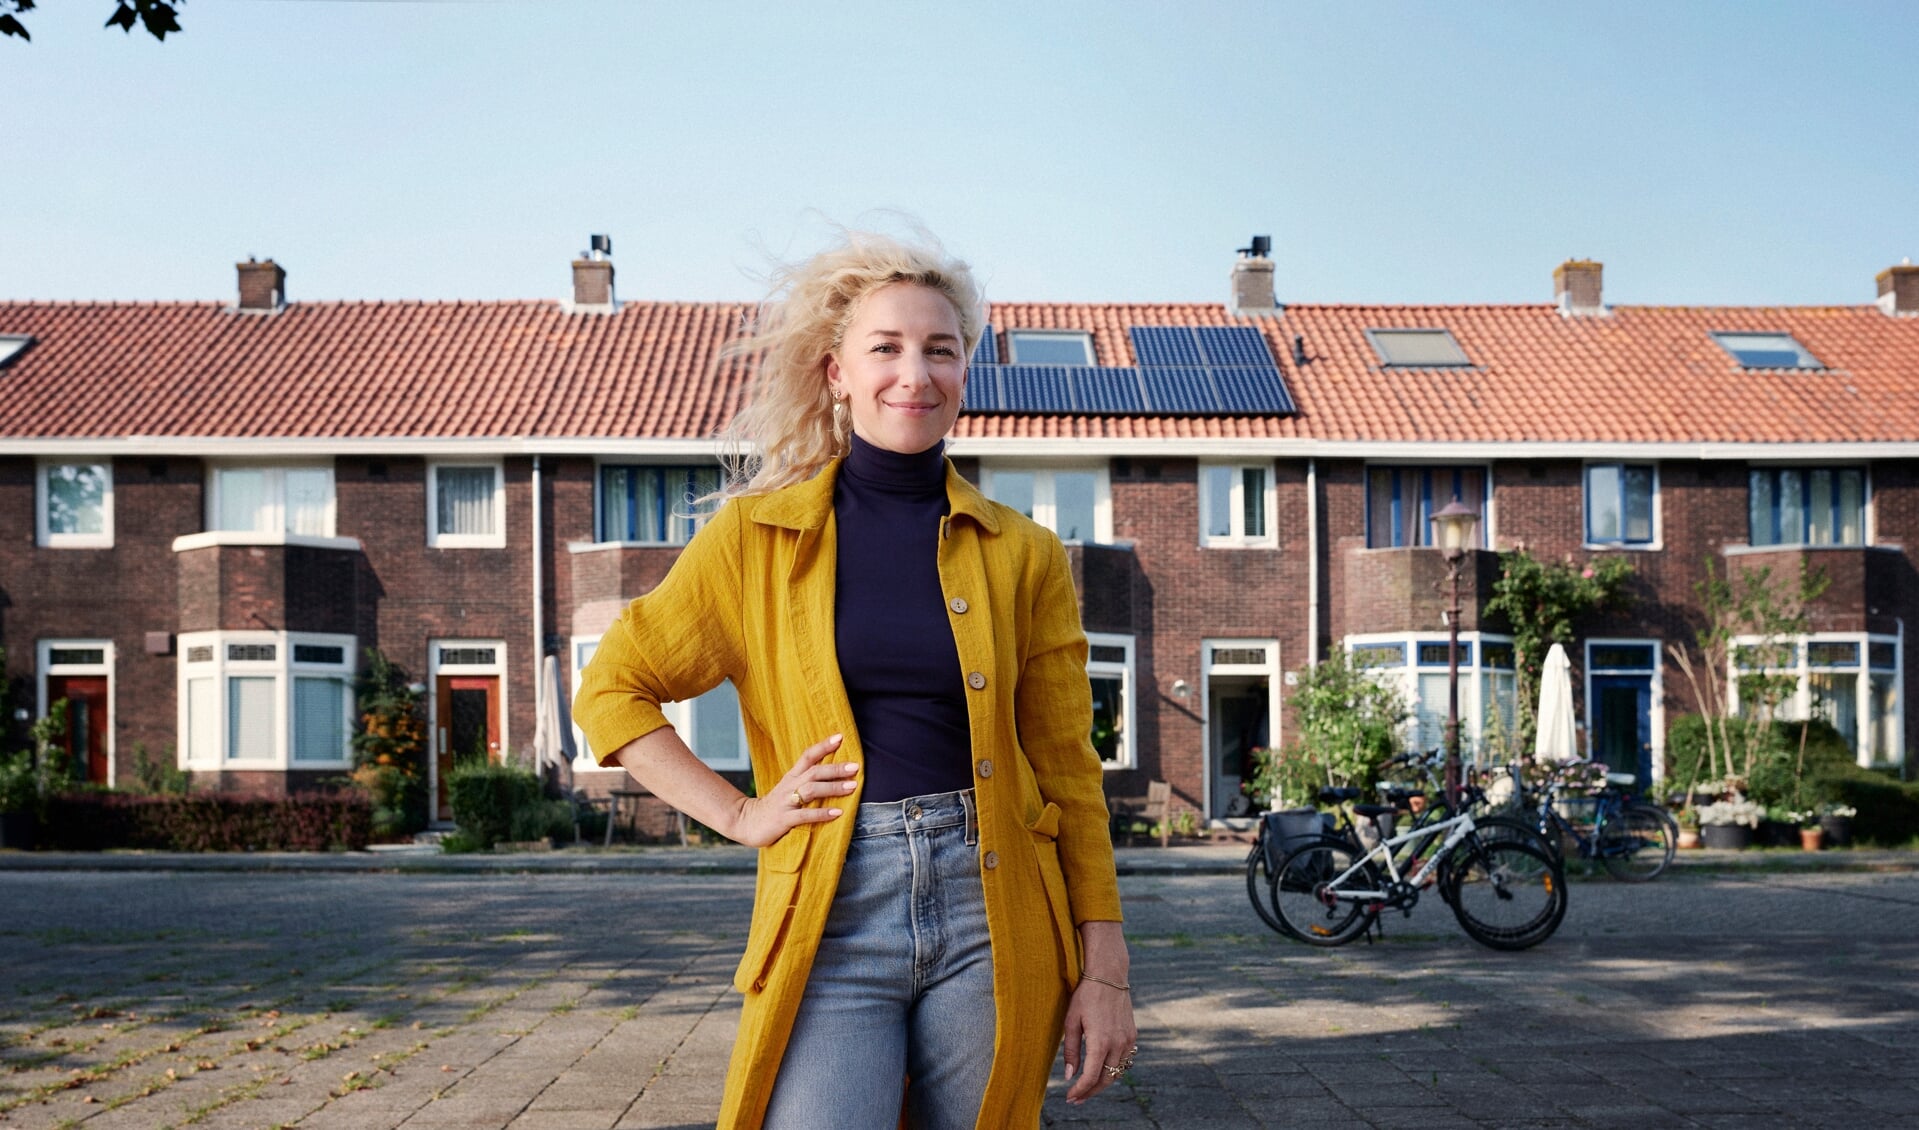 Wie wordt de Klimaatburgemeester van Hellendoorn en inspireert anderen om ook bij te dragen aan verlaging van de CO2-uitstoot?